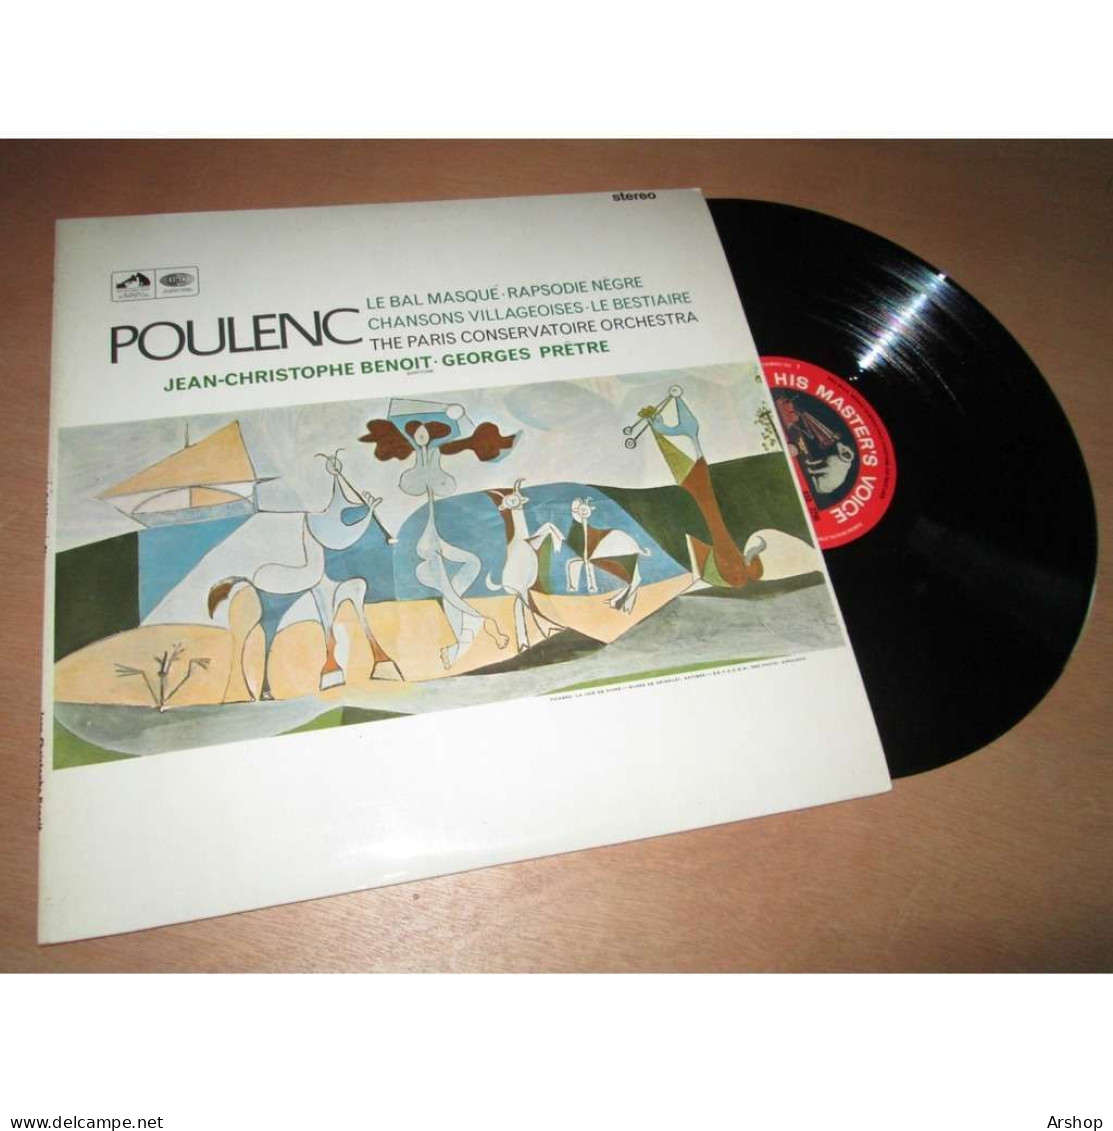 GEORGES PRETRE Le Bal Masqué - Rapsodie Negre - Le Bestiaire & POULENC - His Master Voice ASD 2296 UK Lp 1966 - Clásica